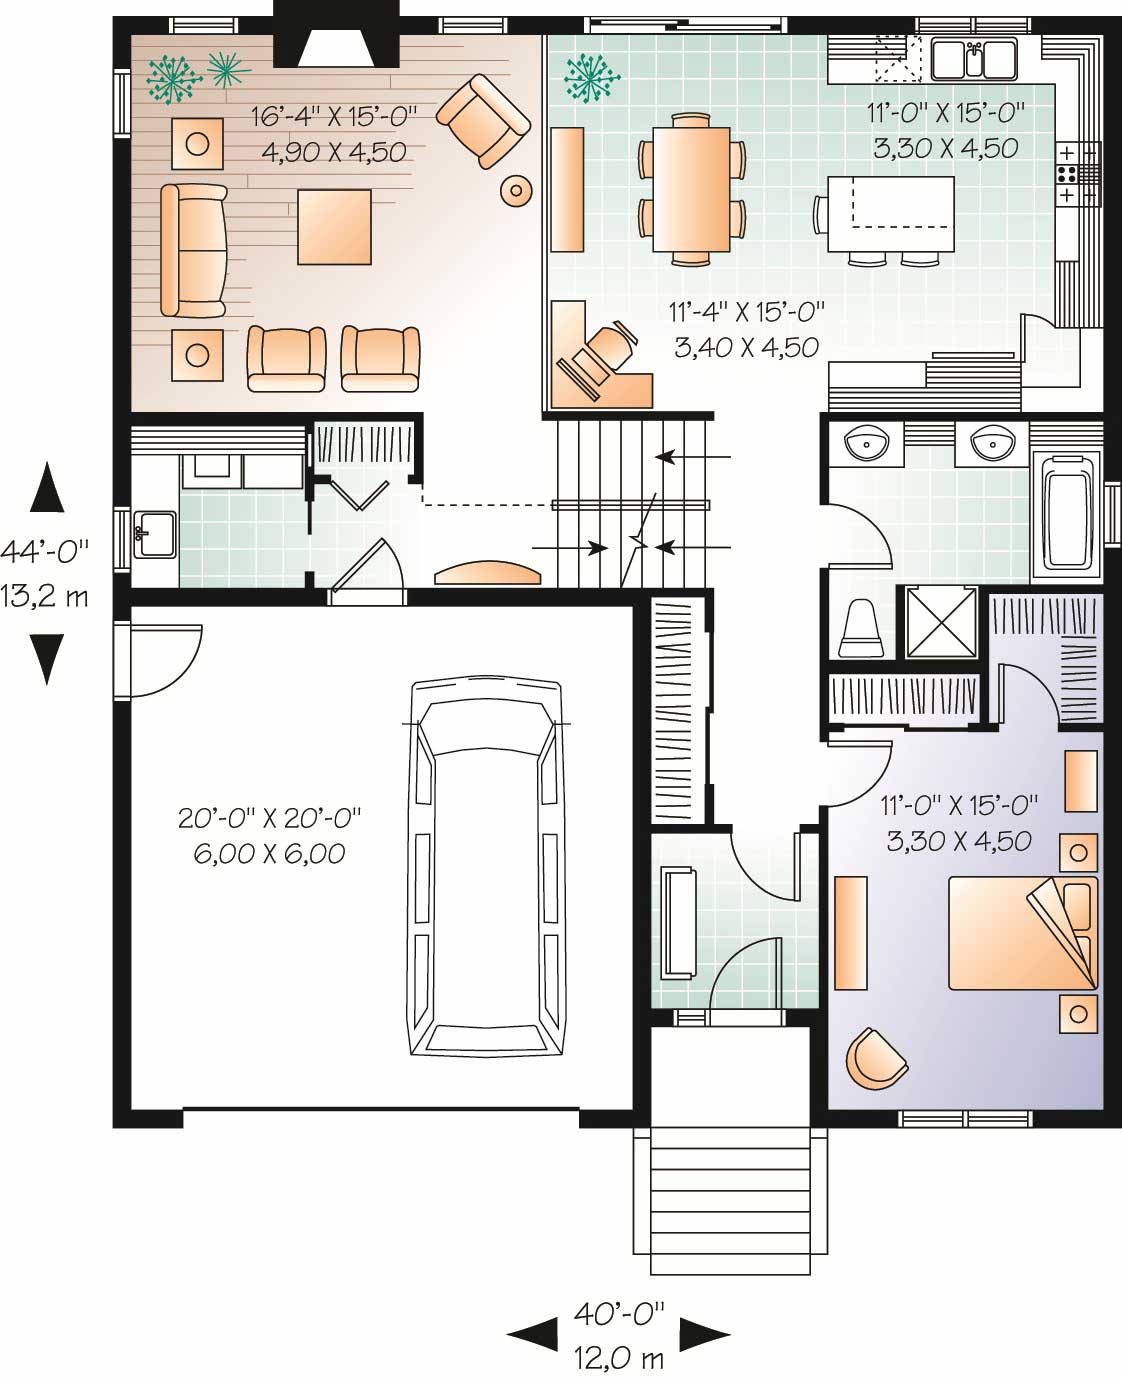 Split-Level House Plans - Home Design 3468